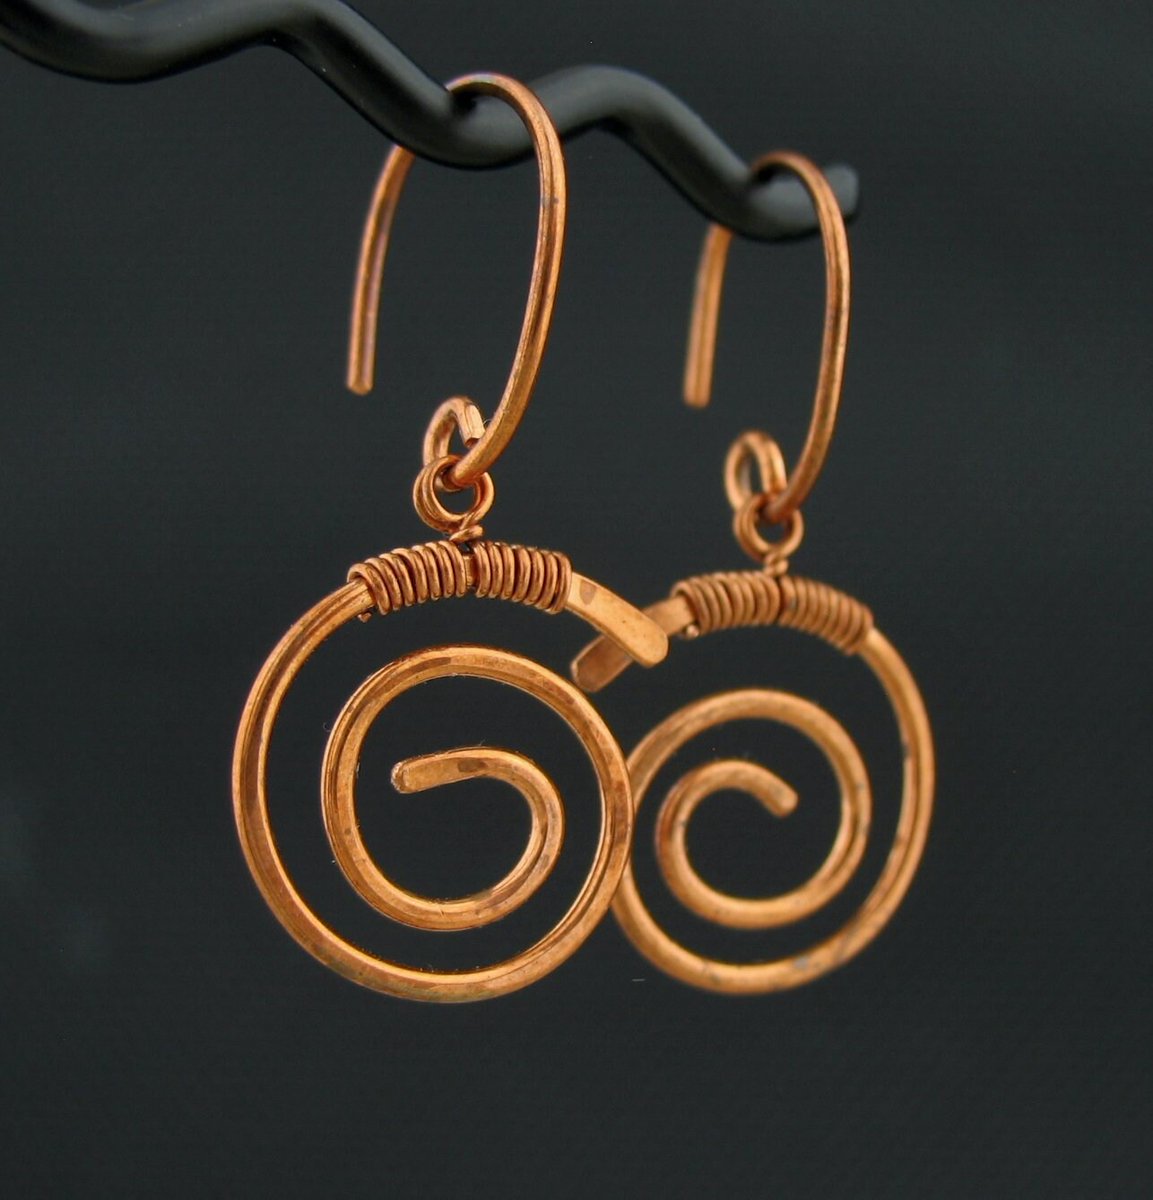 From my #etsy shop: Handmade Copper Wrapped Swirly Wire Earrings etsy.me/3O2Ye0W #copperearrings #handmadeearrings #giftforfriend #handcrafted #copperjewelry